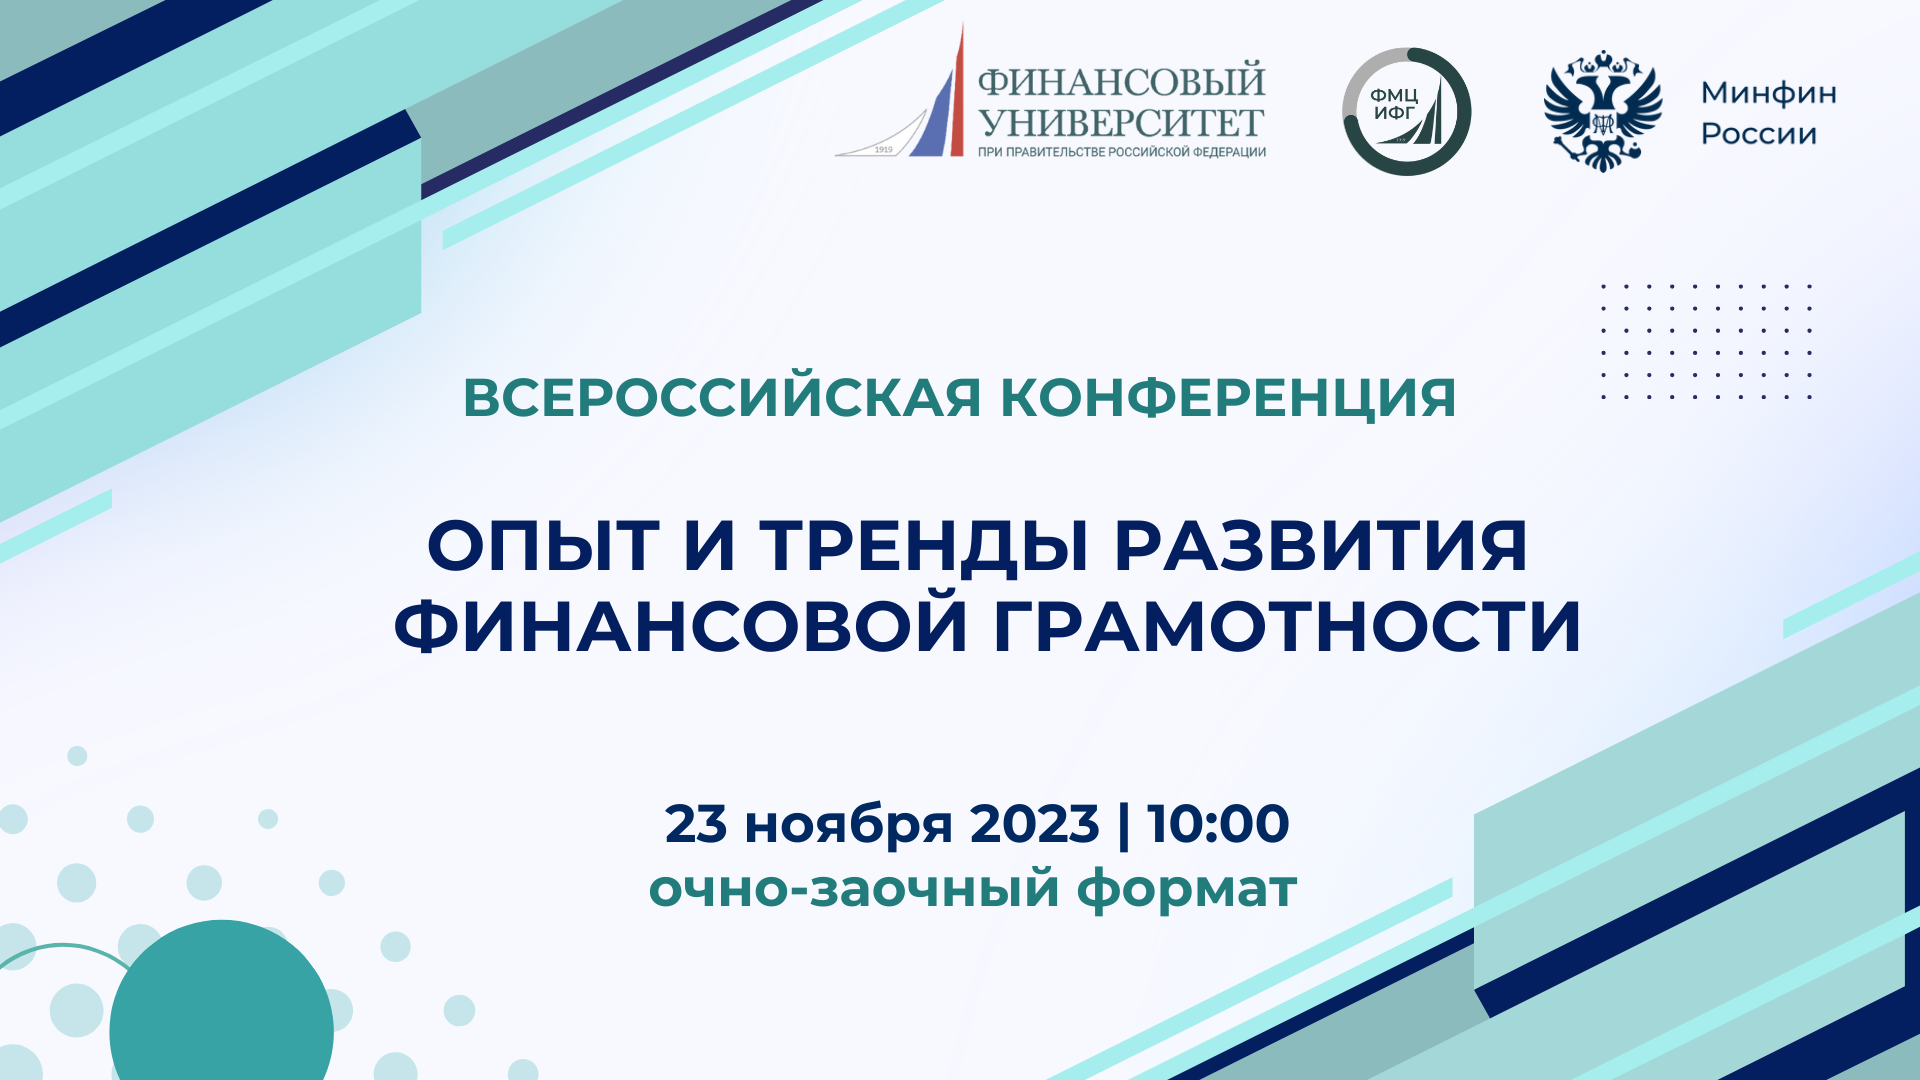 Всероссийская конференция по финансовой грамотности пройдет в Финуниверситете!